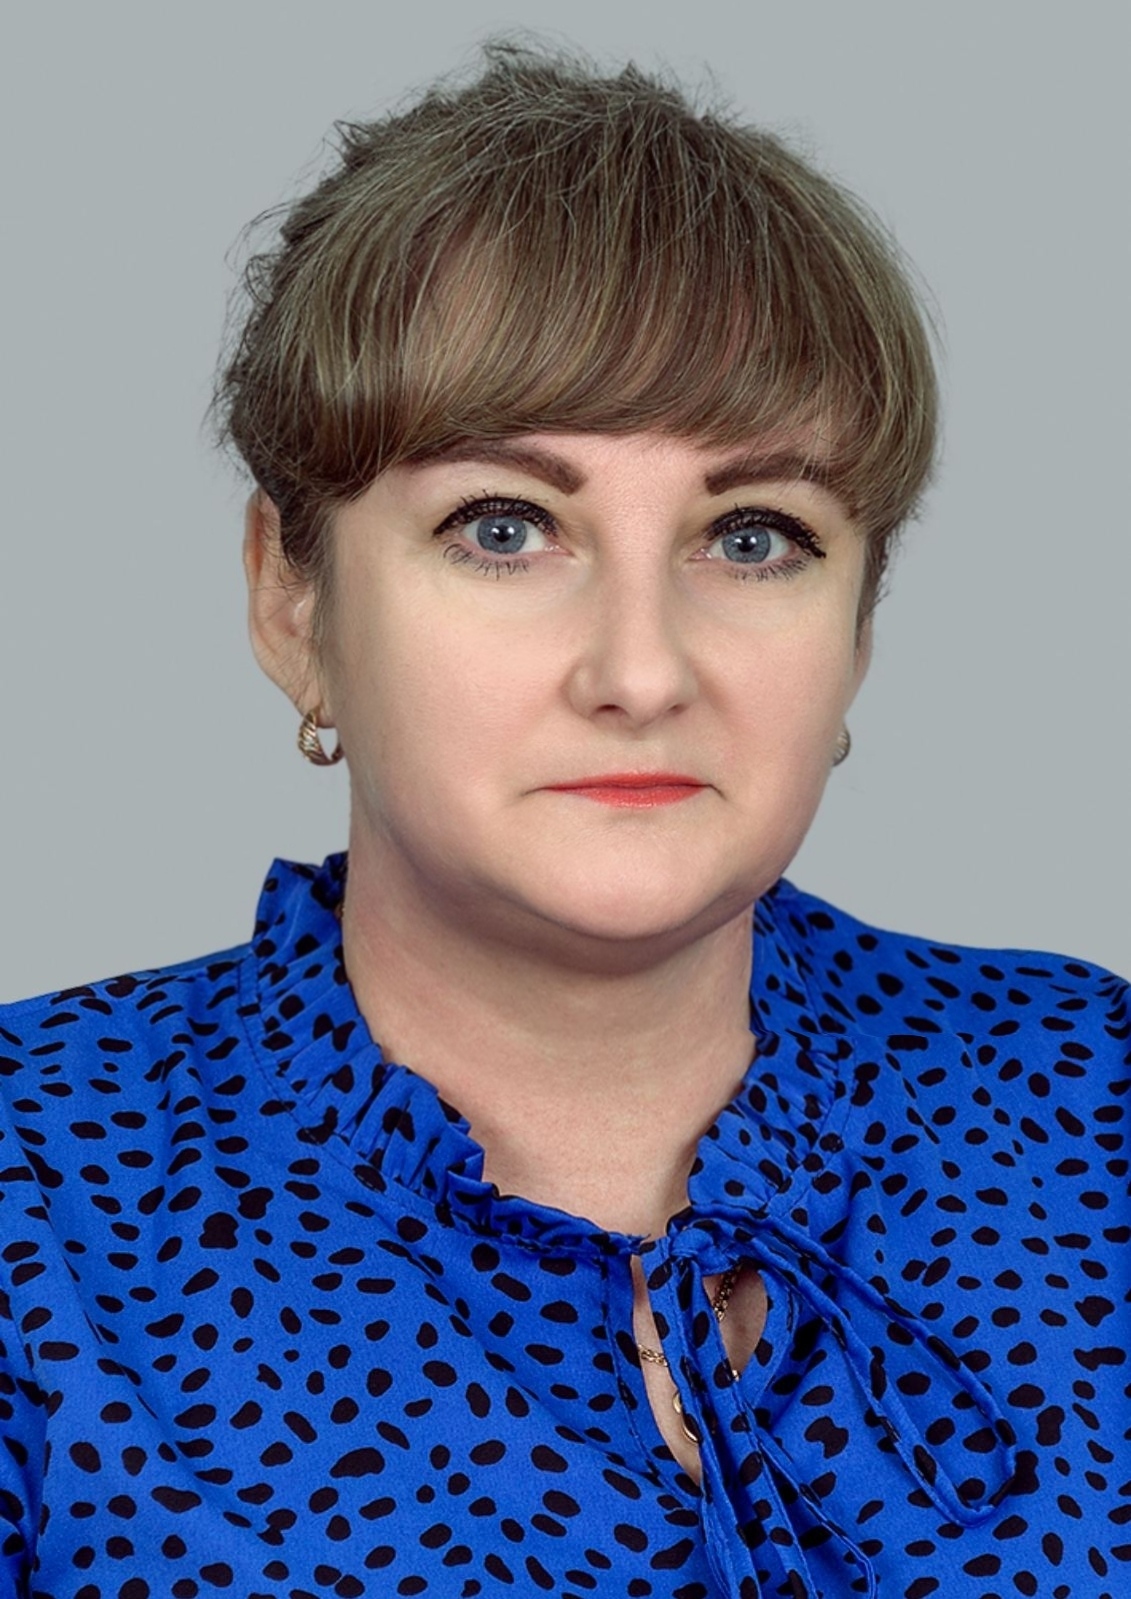 Педагогический работник Королёва Наталья Аркадьевна.